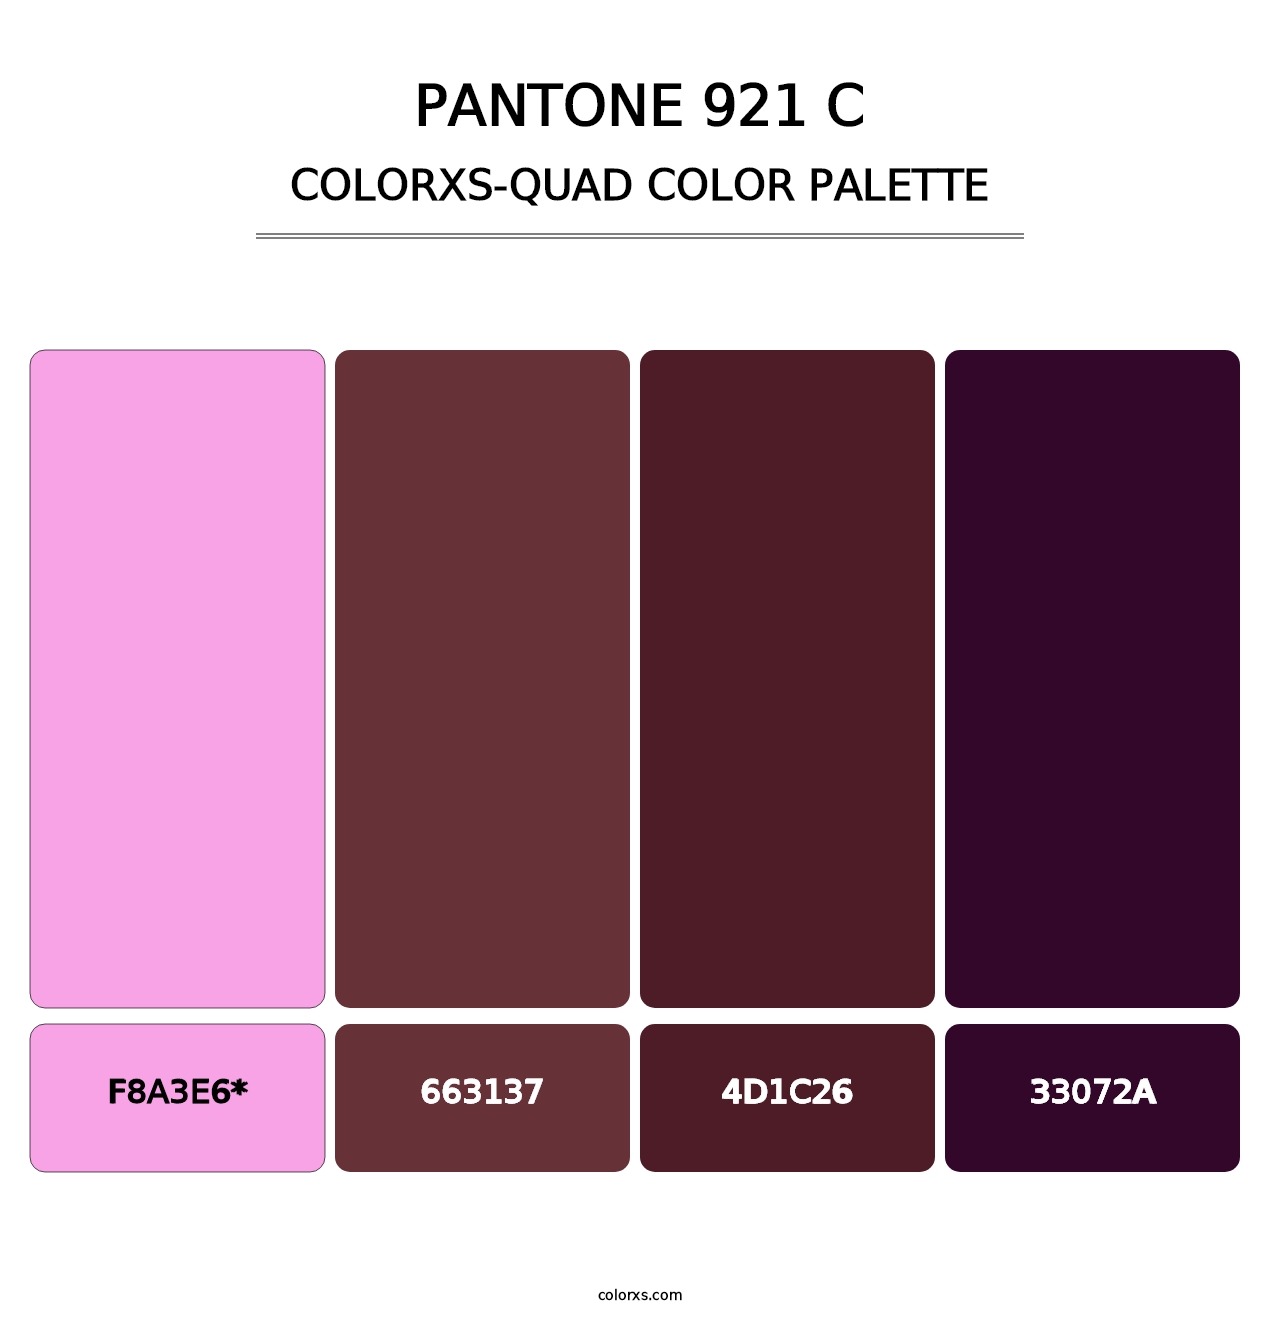 PANTONE 921 C - Colorxs Quad Palette